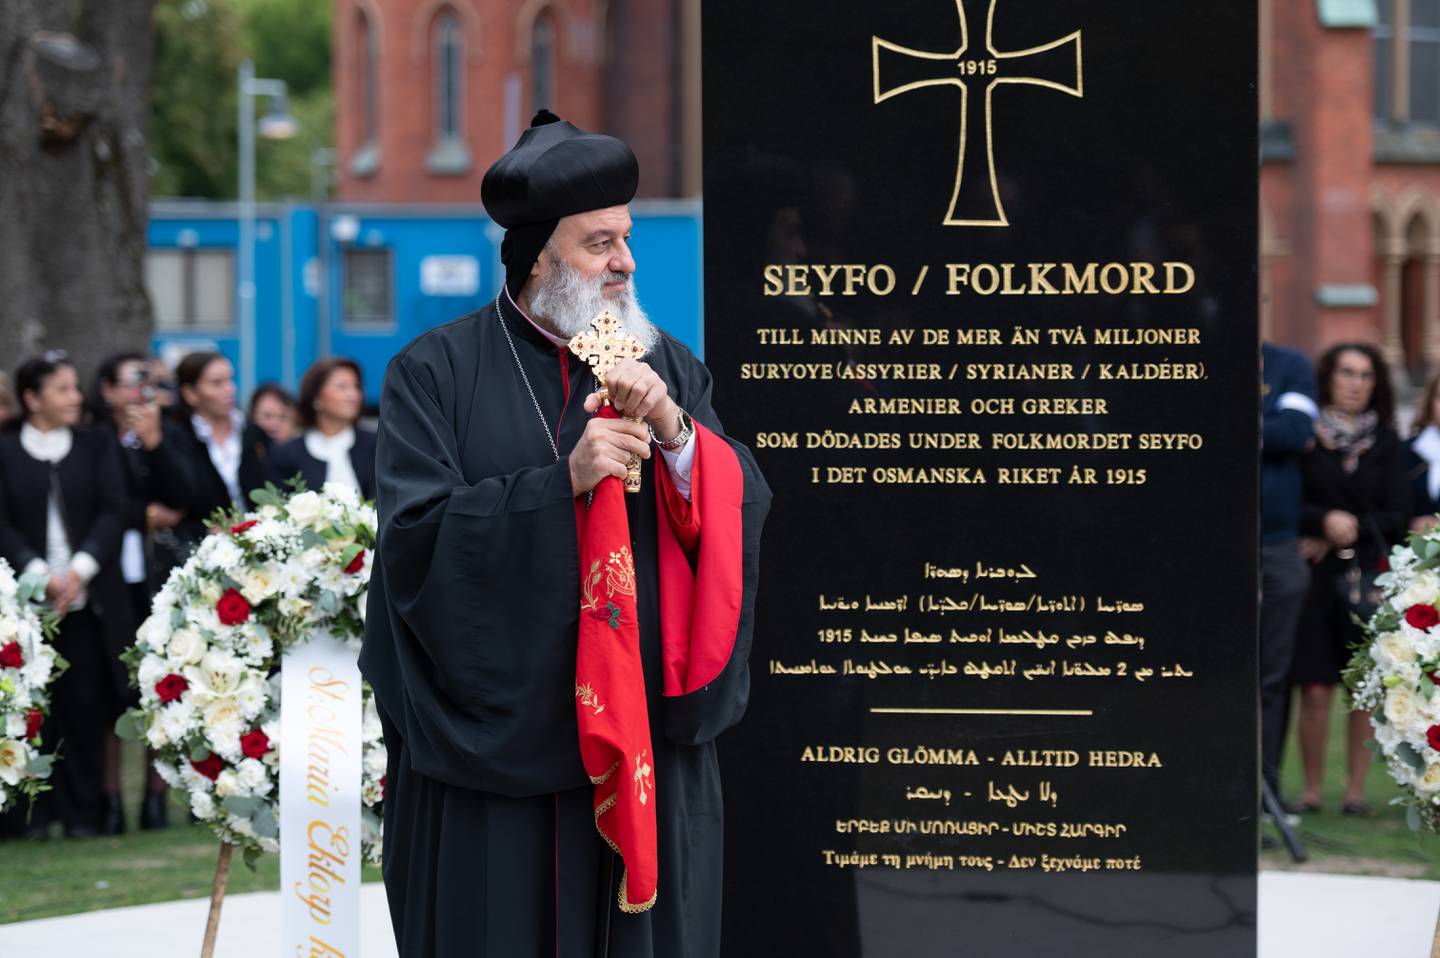 Minnesmärke över Seyfo invigt i Norrköping